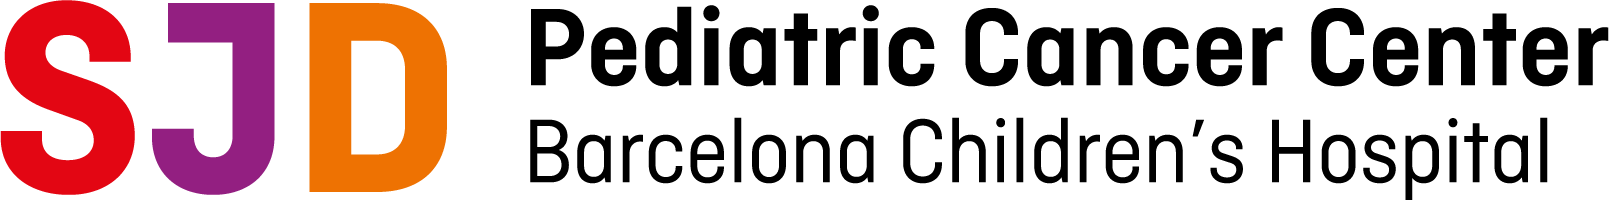 logo_PCCB